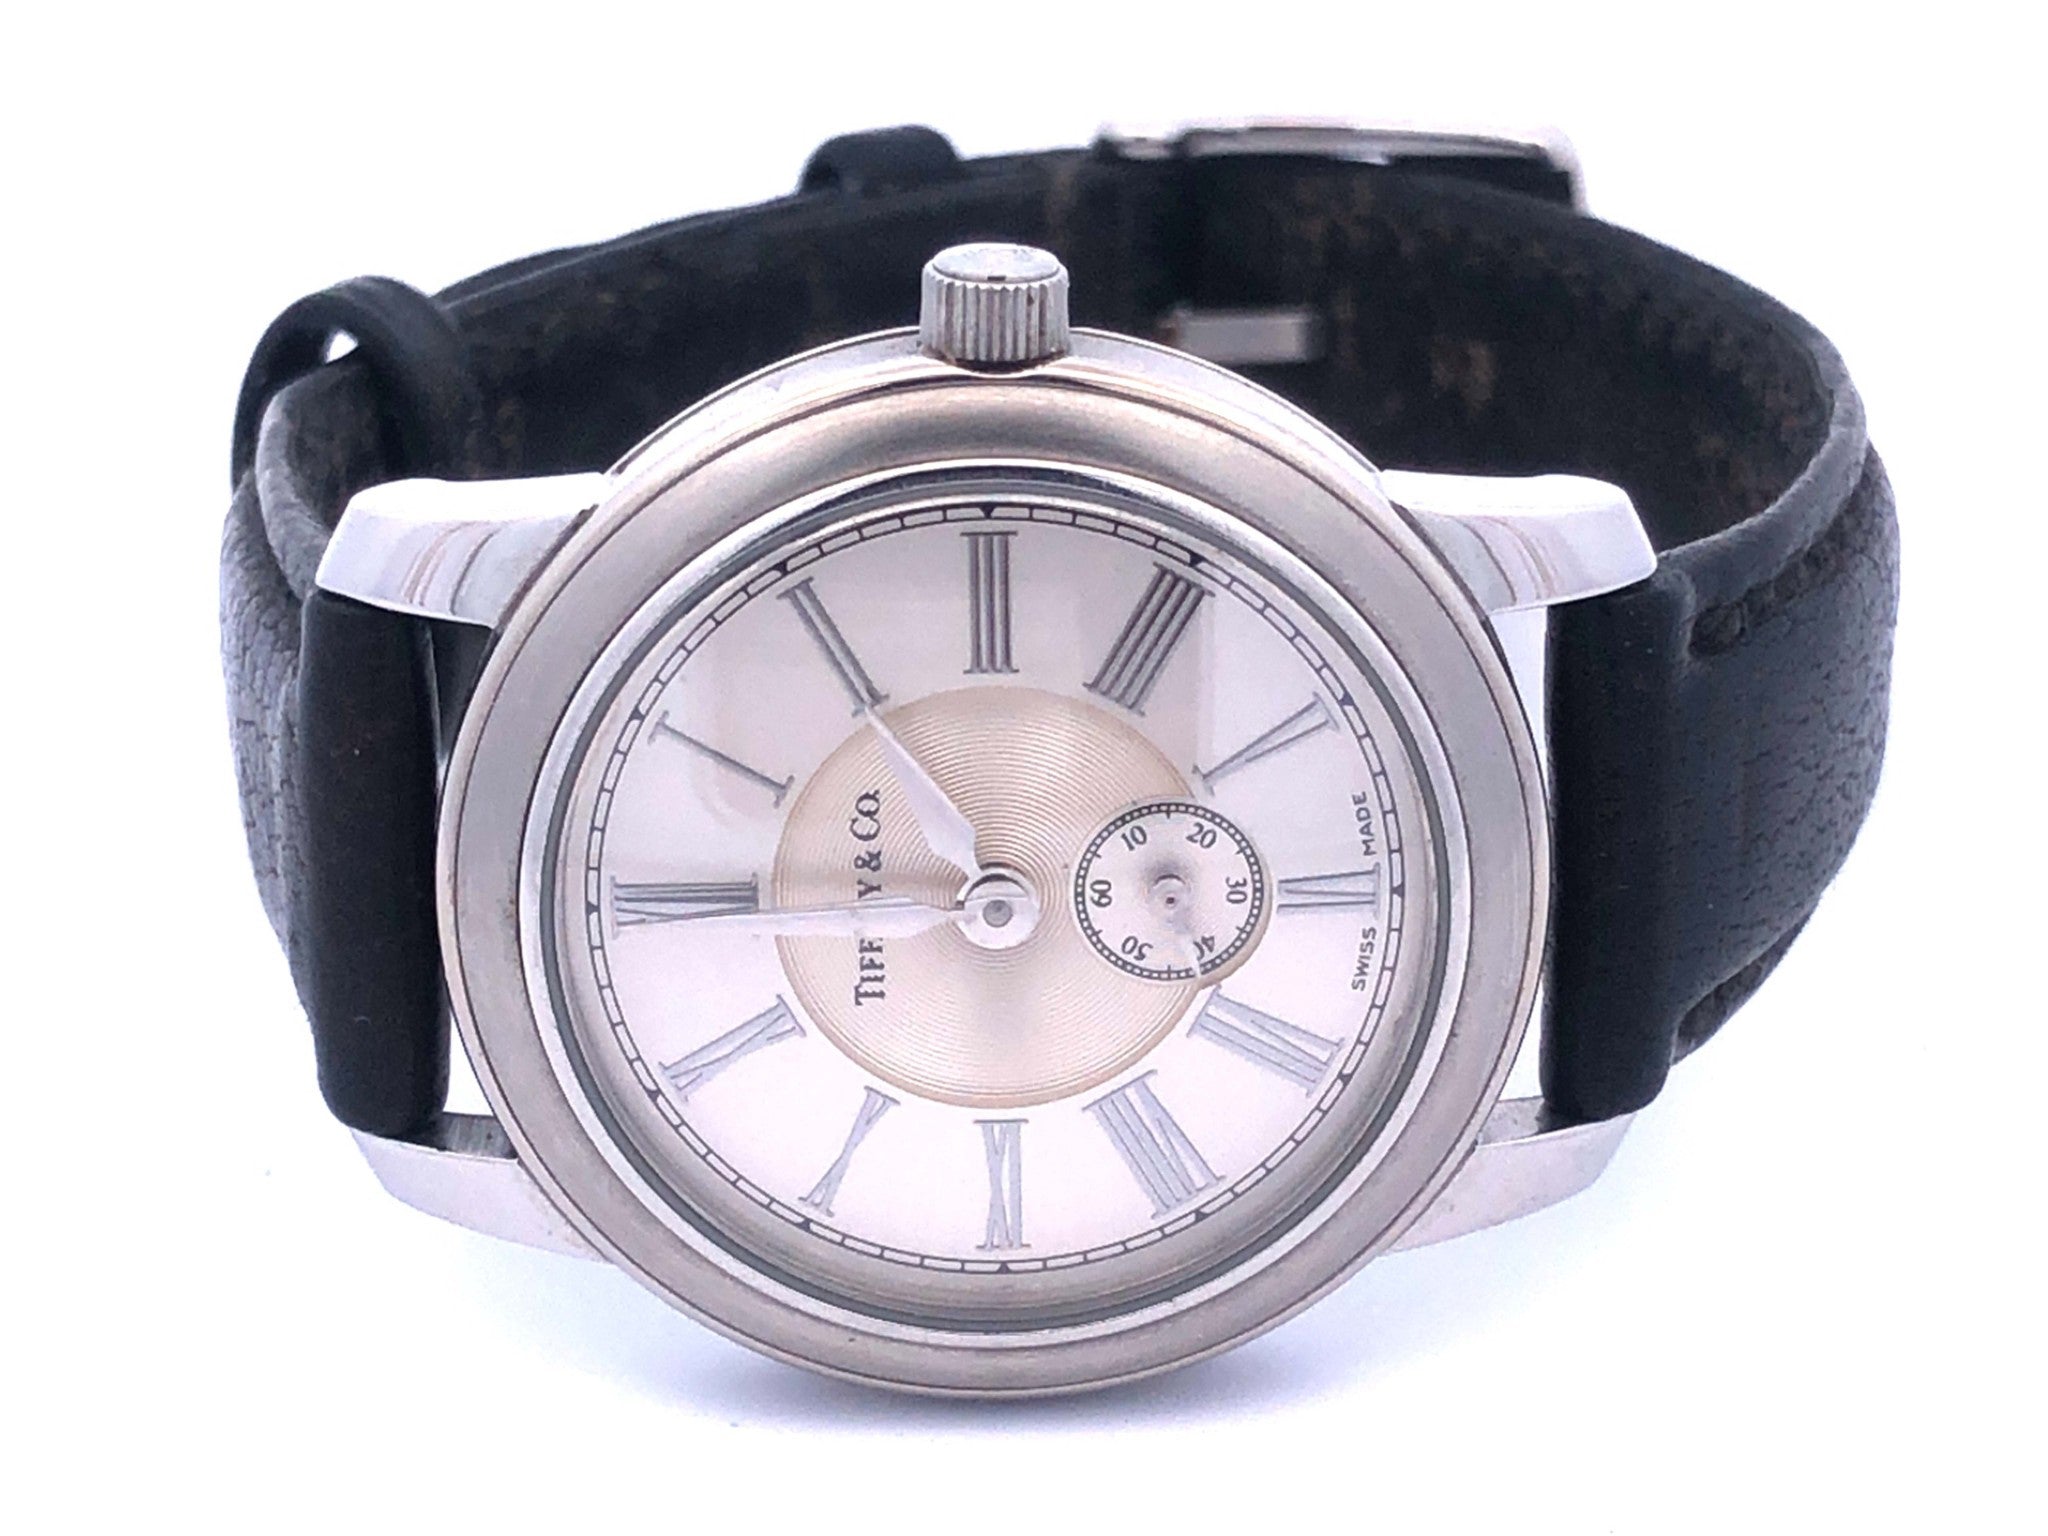 Tiffany & Co. Mark Atlas Stainless Steel 27mm Watch